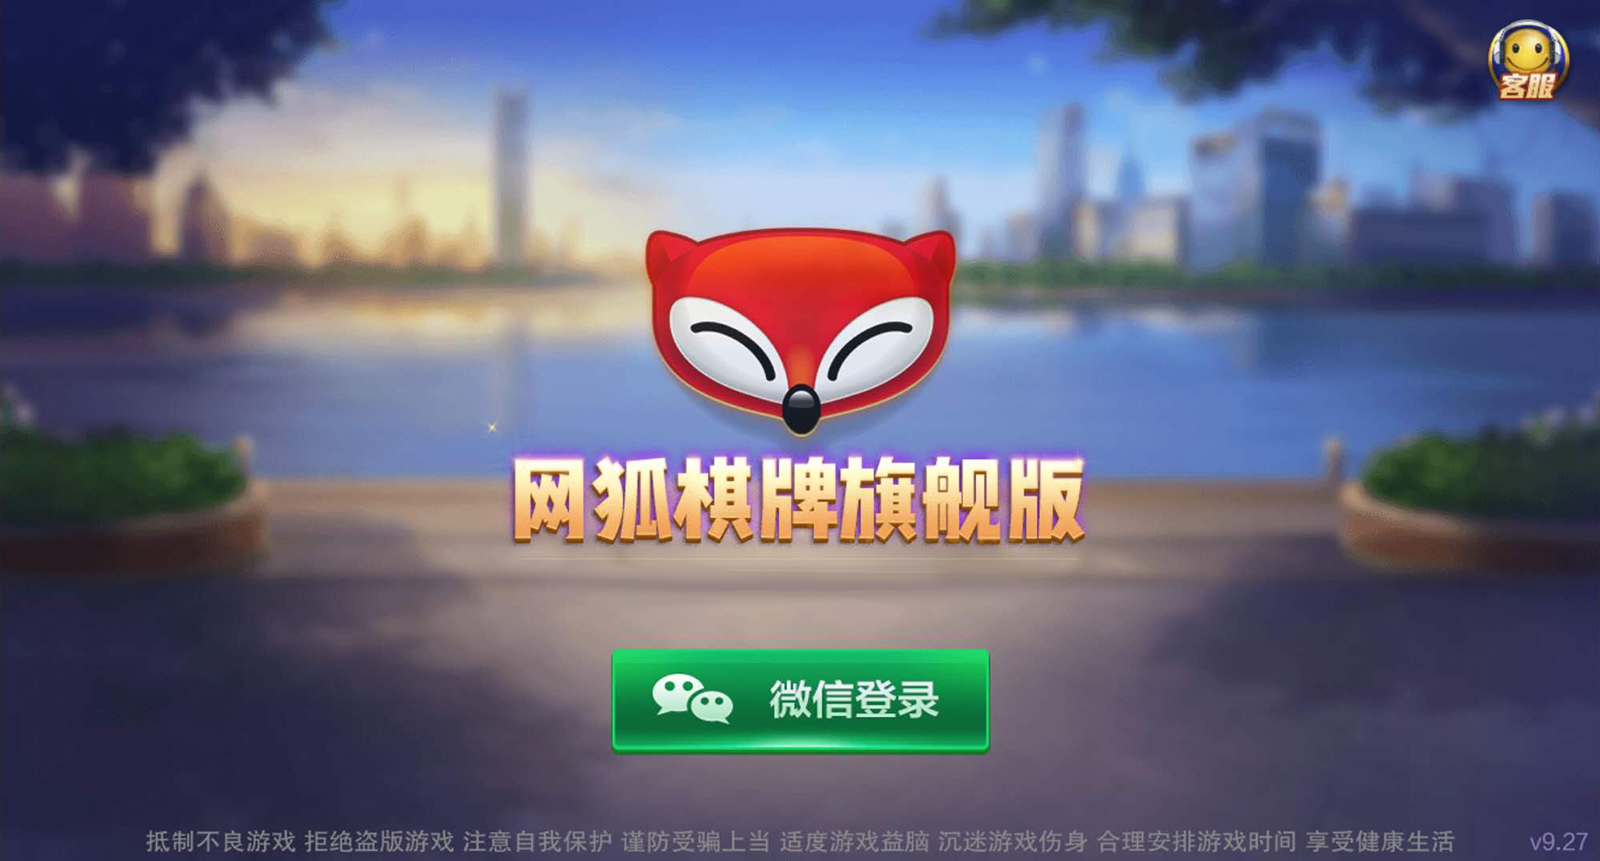 网狐旗舰版棋牌平台完整全套源码